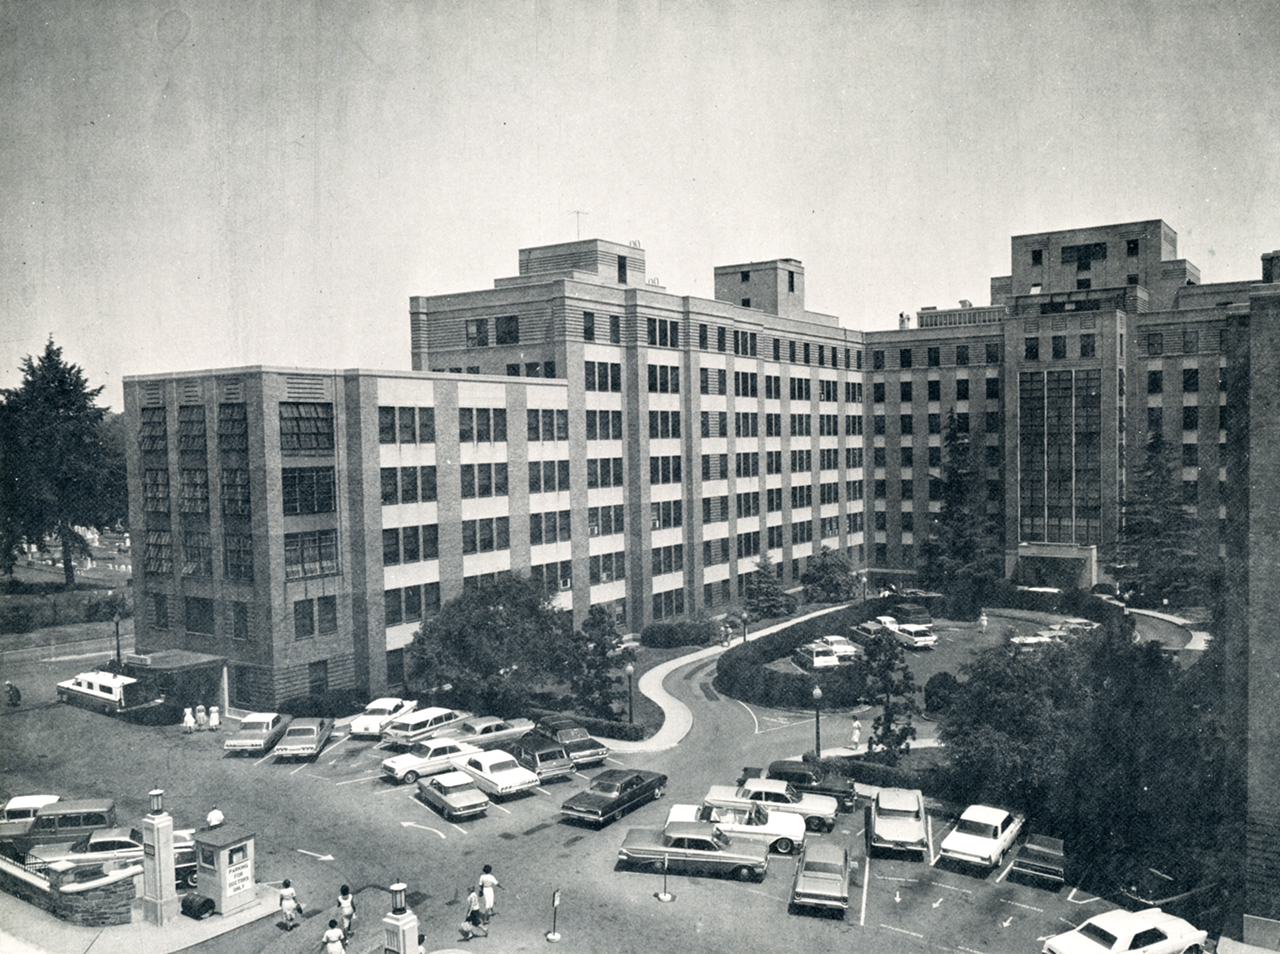 Una vista del exterior del Delaware Hospital en la década de 1960